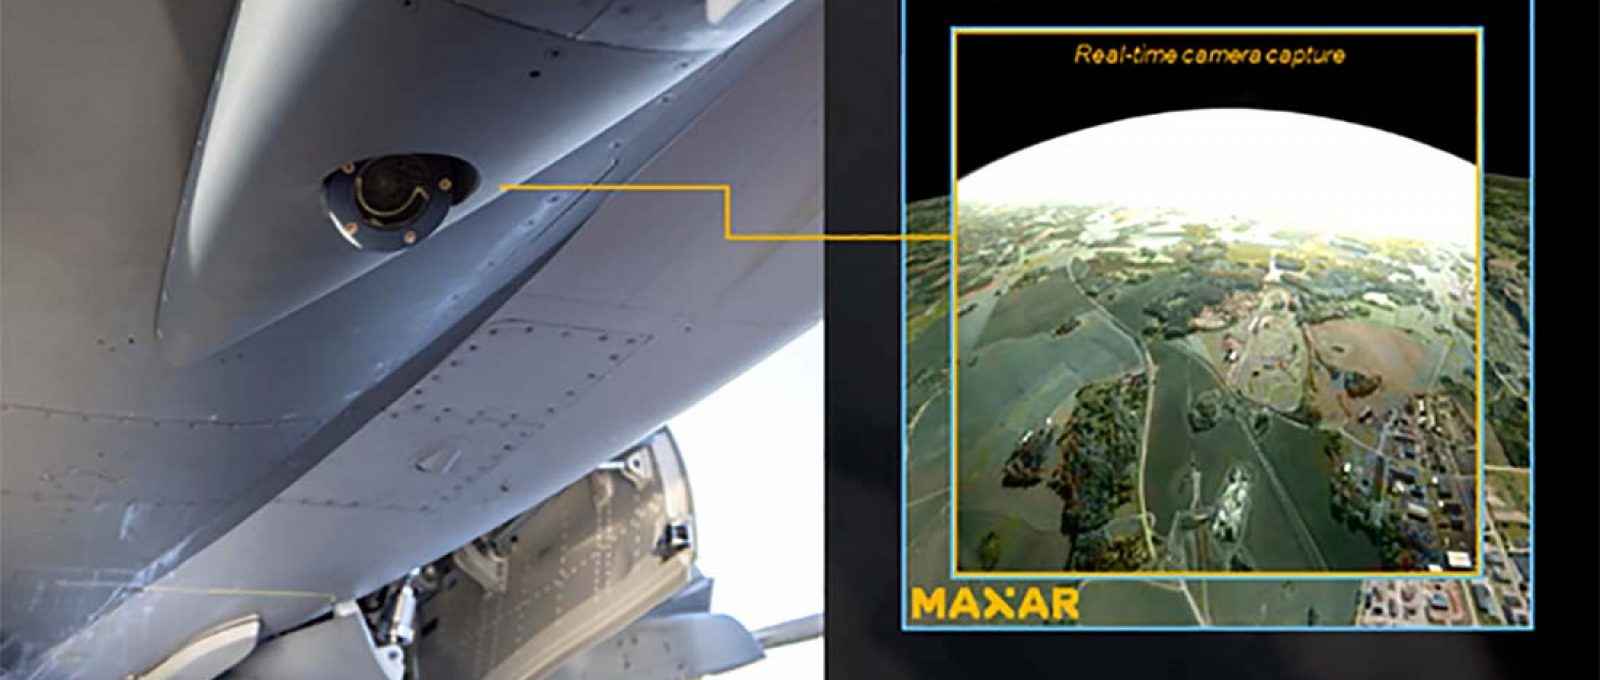 A Maxar, usando dados de satélite, produz modelos detalhados de superfície 3D com alta precisão (Imagem: Saab/Maxar).